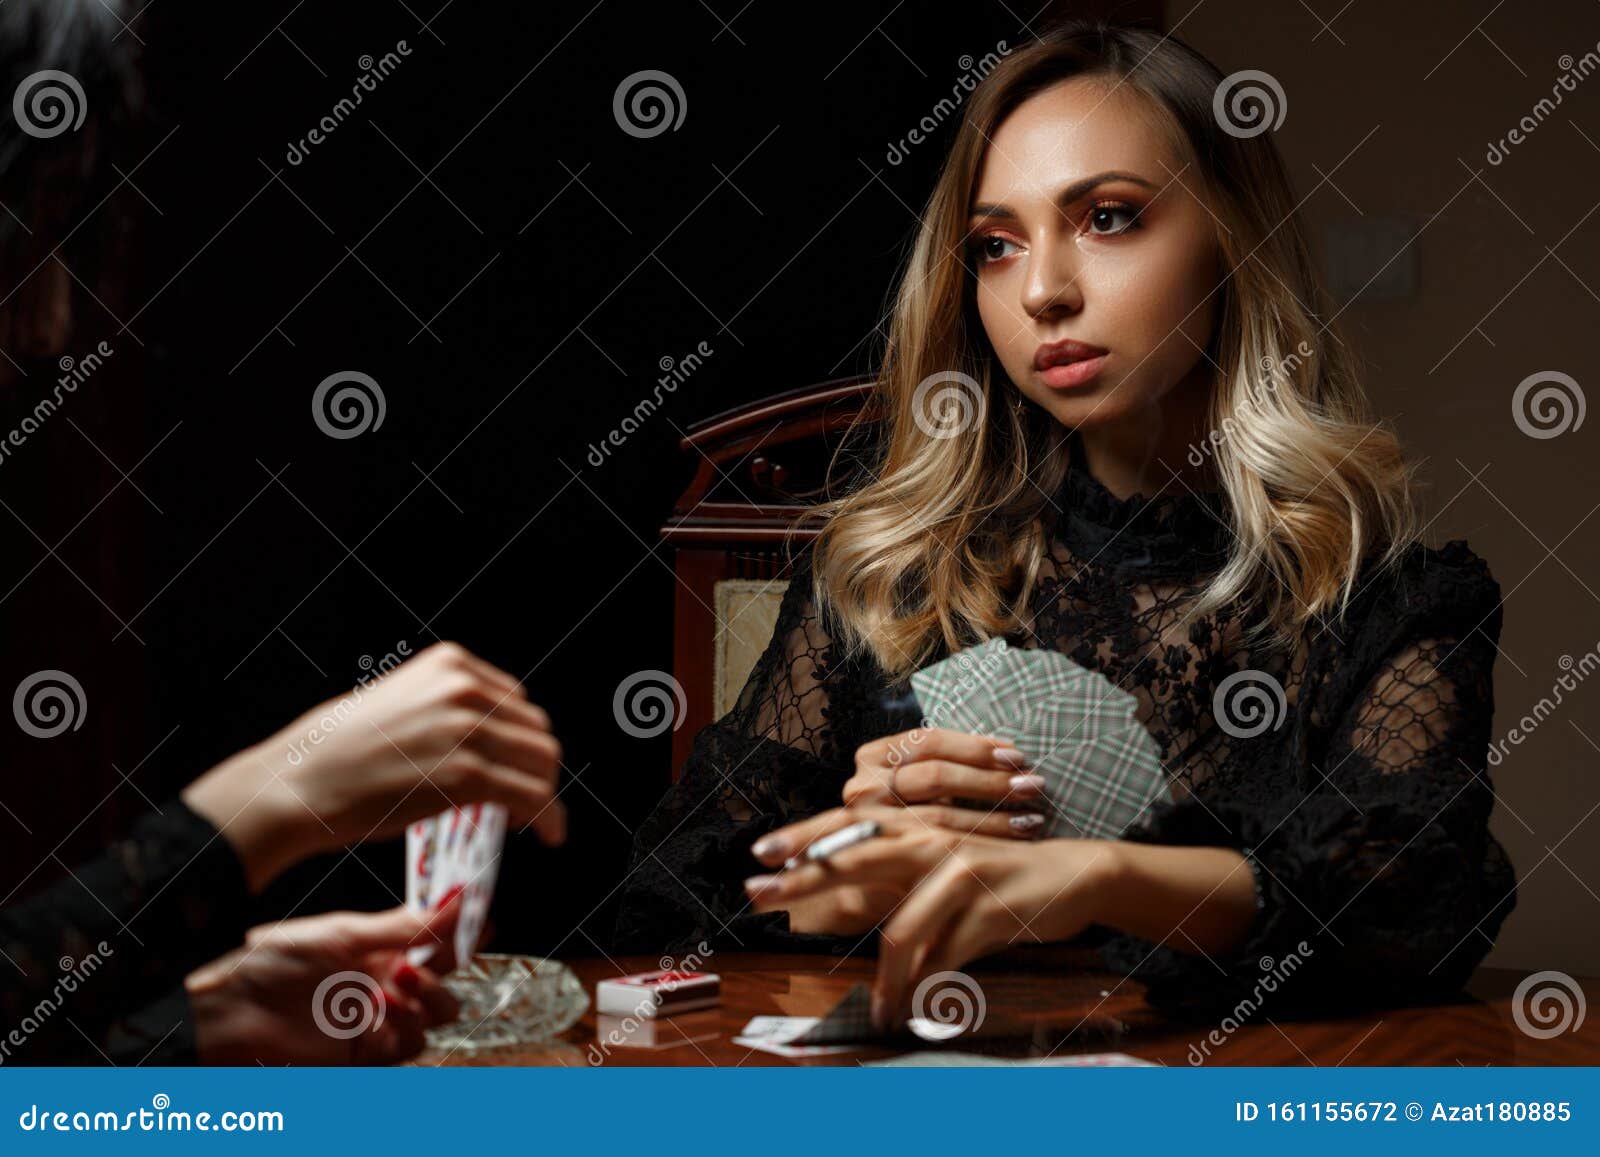 Девушки играют в карты на раздевание видео европейская рулетка с выводом денег без вложений